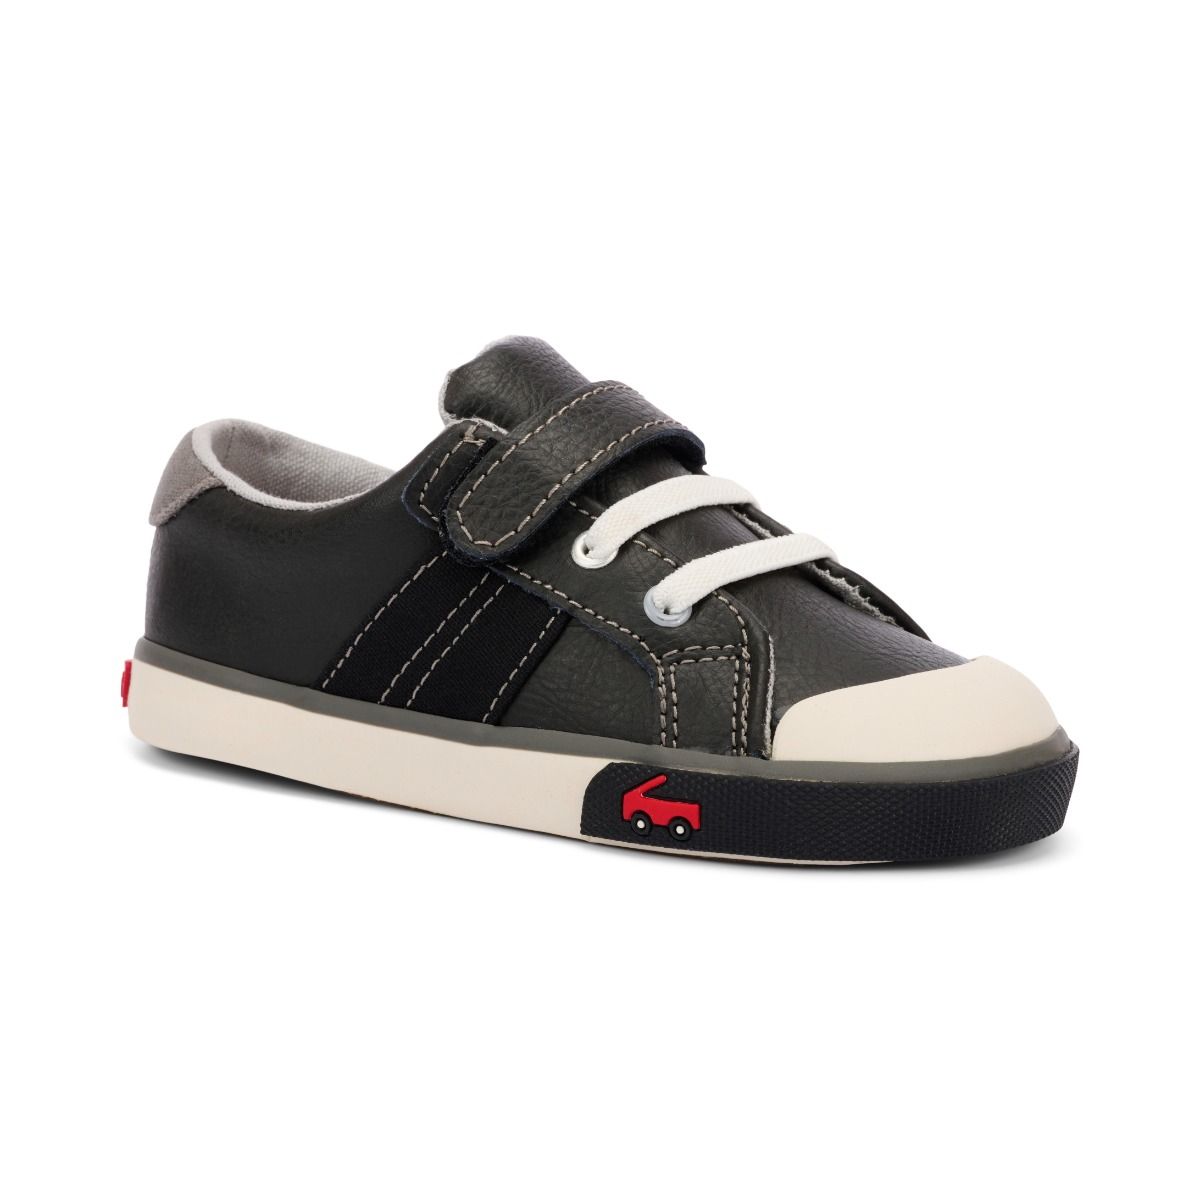 See Kai Run Lucci Sneaker - Black Leather/Grey